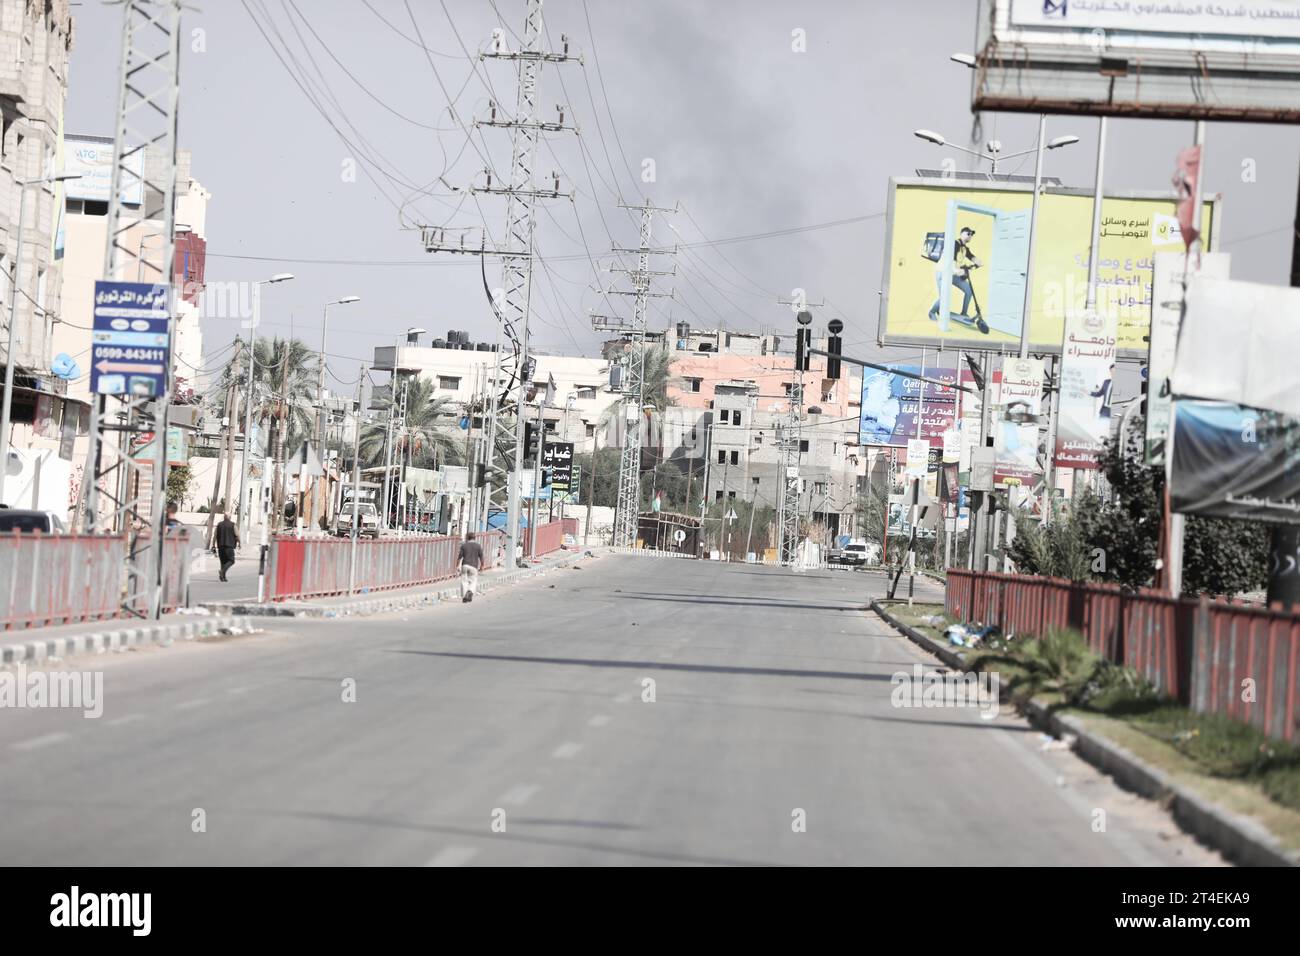 Palästinenser fahren ein Auto mit Habseligkeiten, während Rauch im Hintergrund aufsteigt, während sie aus dem Flüchtlingslager Nuseirat fliehen Palästinenser fahren ein Auto mit Habseligkeiten, während Rauch im Hintergrund auftaucht, während sie am 30. Oktober 2023 aus dem Flüchtlingslager Nuseirat im zentralen Gazastreifen fliehen. zwischen Israel und der palästinensischen Gruppe Hamas. Foto: Naaman Omar apaimages Nuseirat Gaza Streifen palästinensisches Gebiet 301023 Nuseirat NAA 009 Copyright: XapaimagesxNaamanxOmarxxxapaimagesx Credit: Imago/Alamy Live News Stockfoto